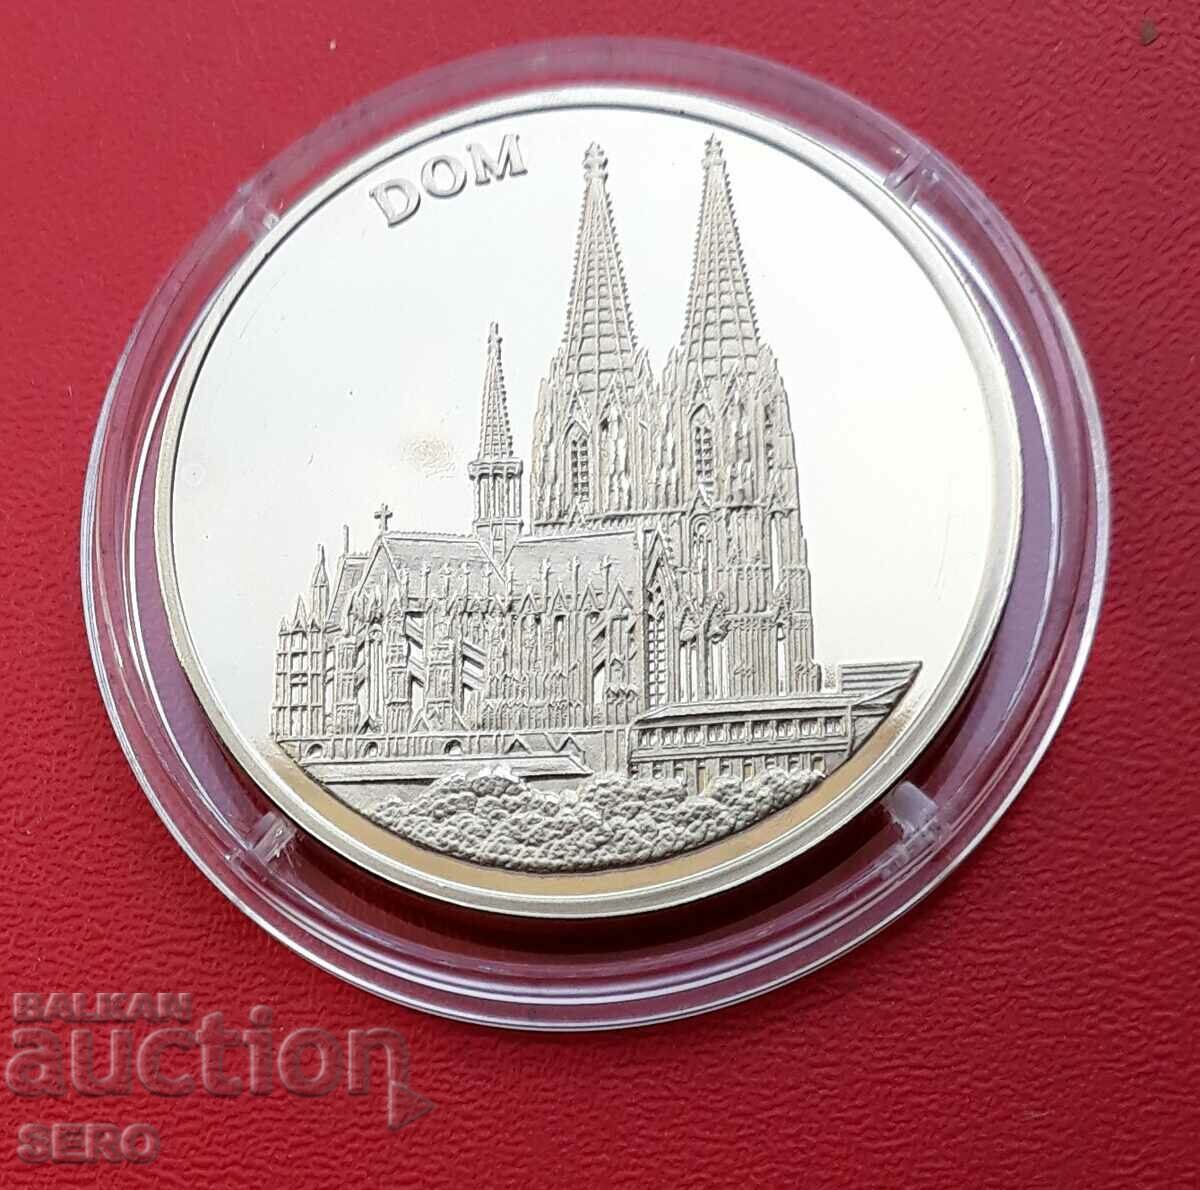 Γερμανία-μετάλλιο 1998 Κολωνία-καθεδρικός ναός